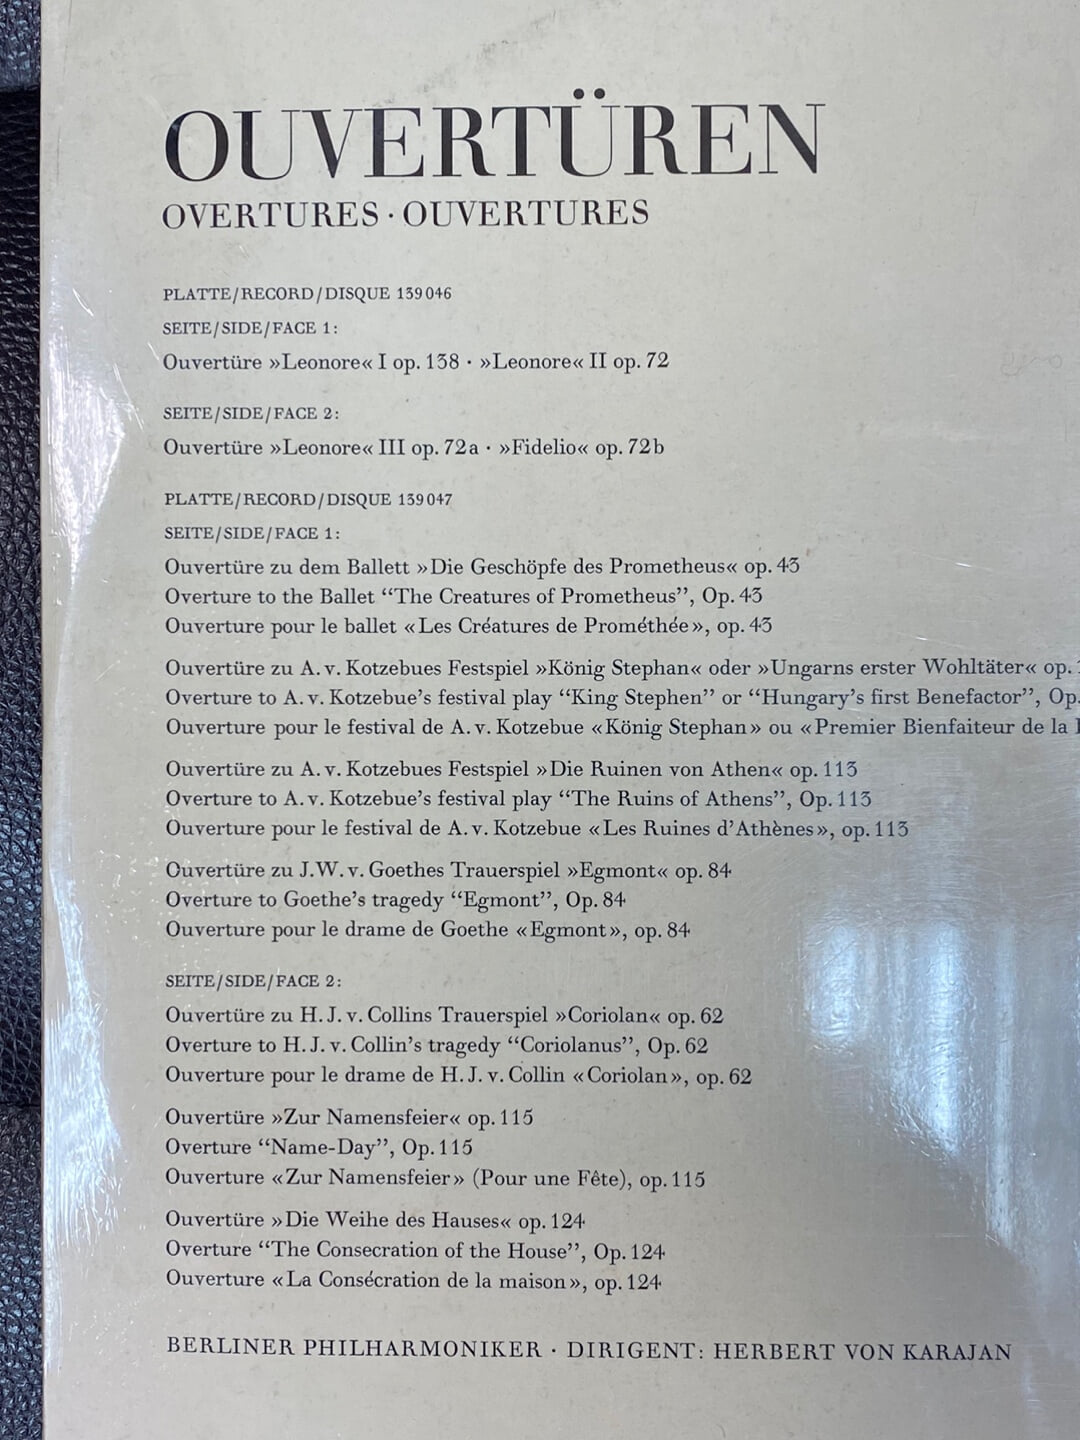 [LP] 카라얀 - Karajan - Beethoven Complete Overtures,Samtliche Ouverturen 2Lps [미개봉] [독일반]